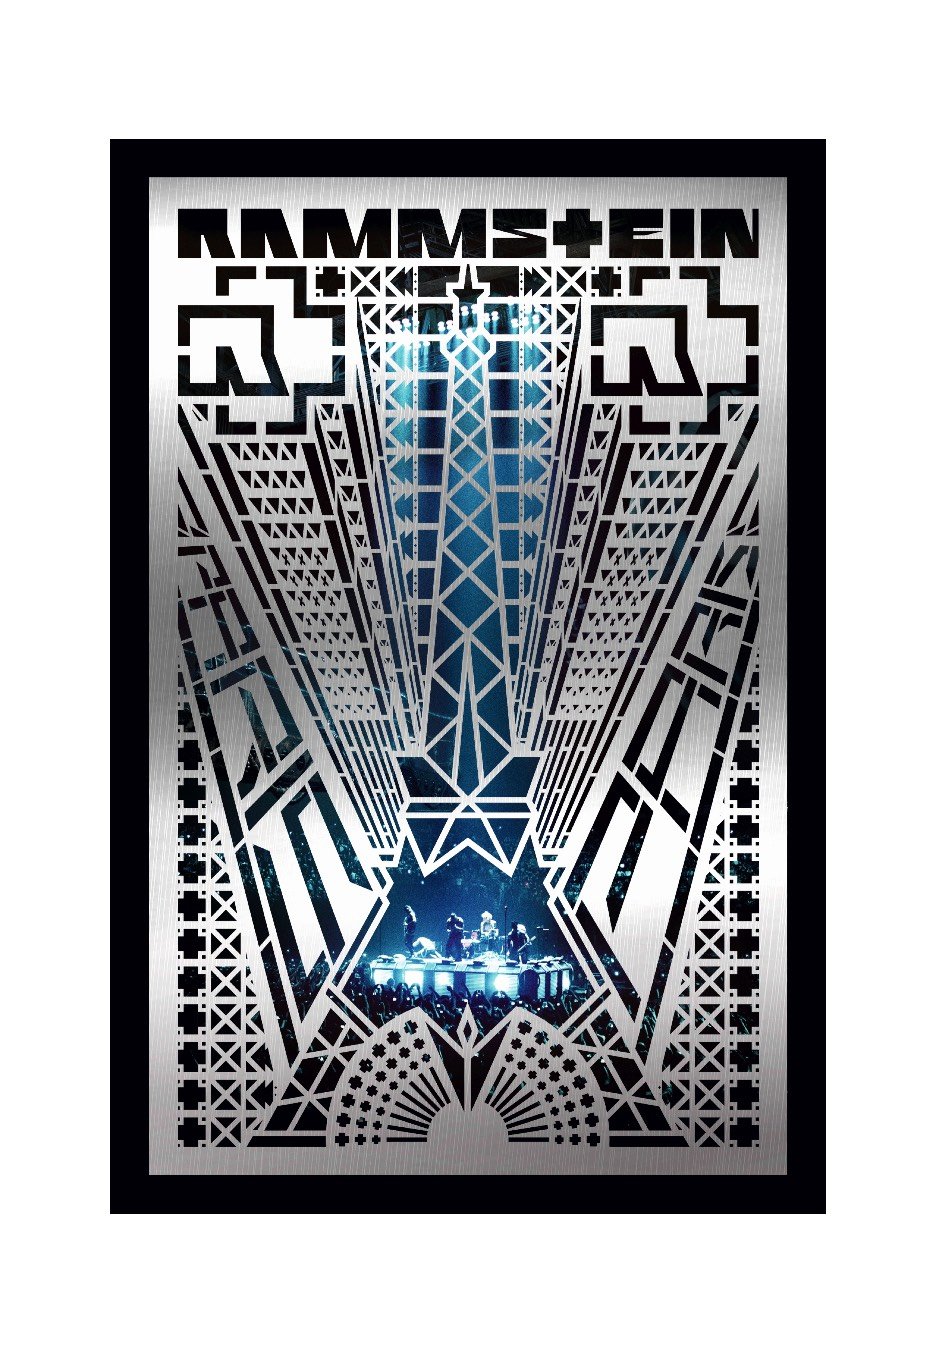 Rammstein - Rammstein: Paris (Special Edt.) - 2 CD + Blu Ray